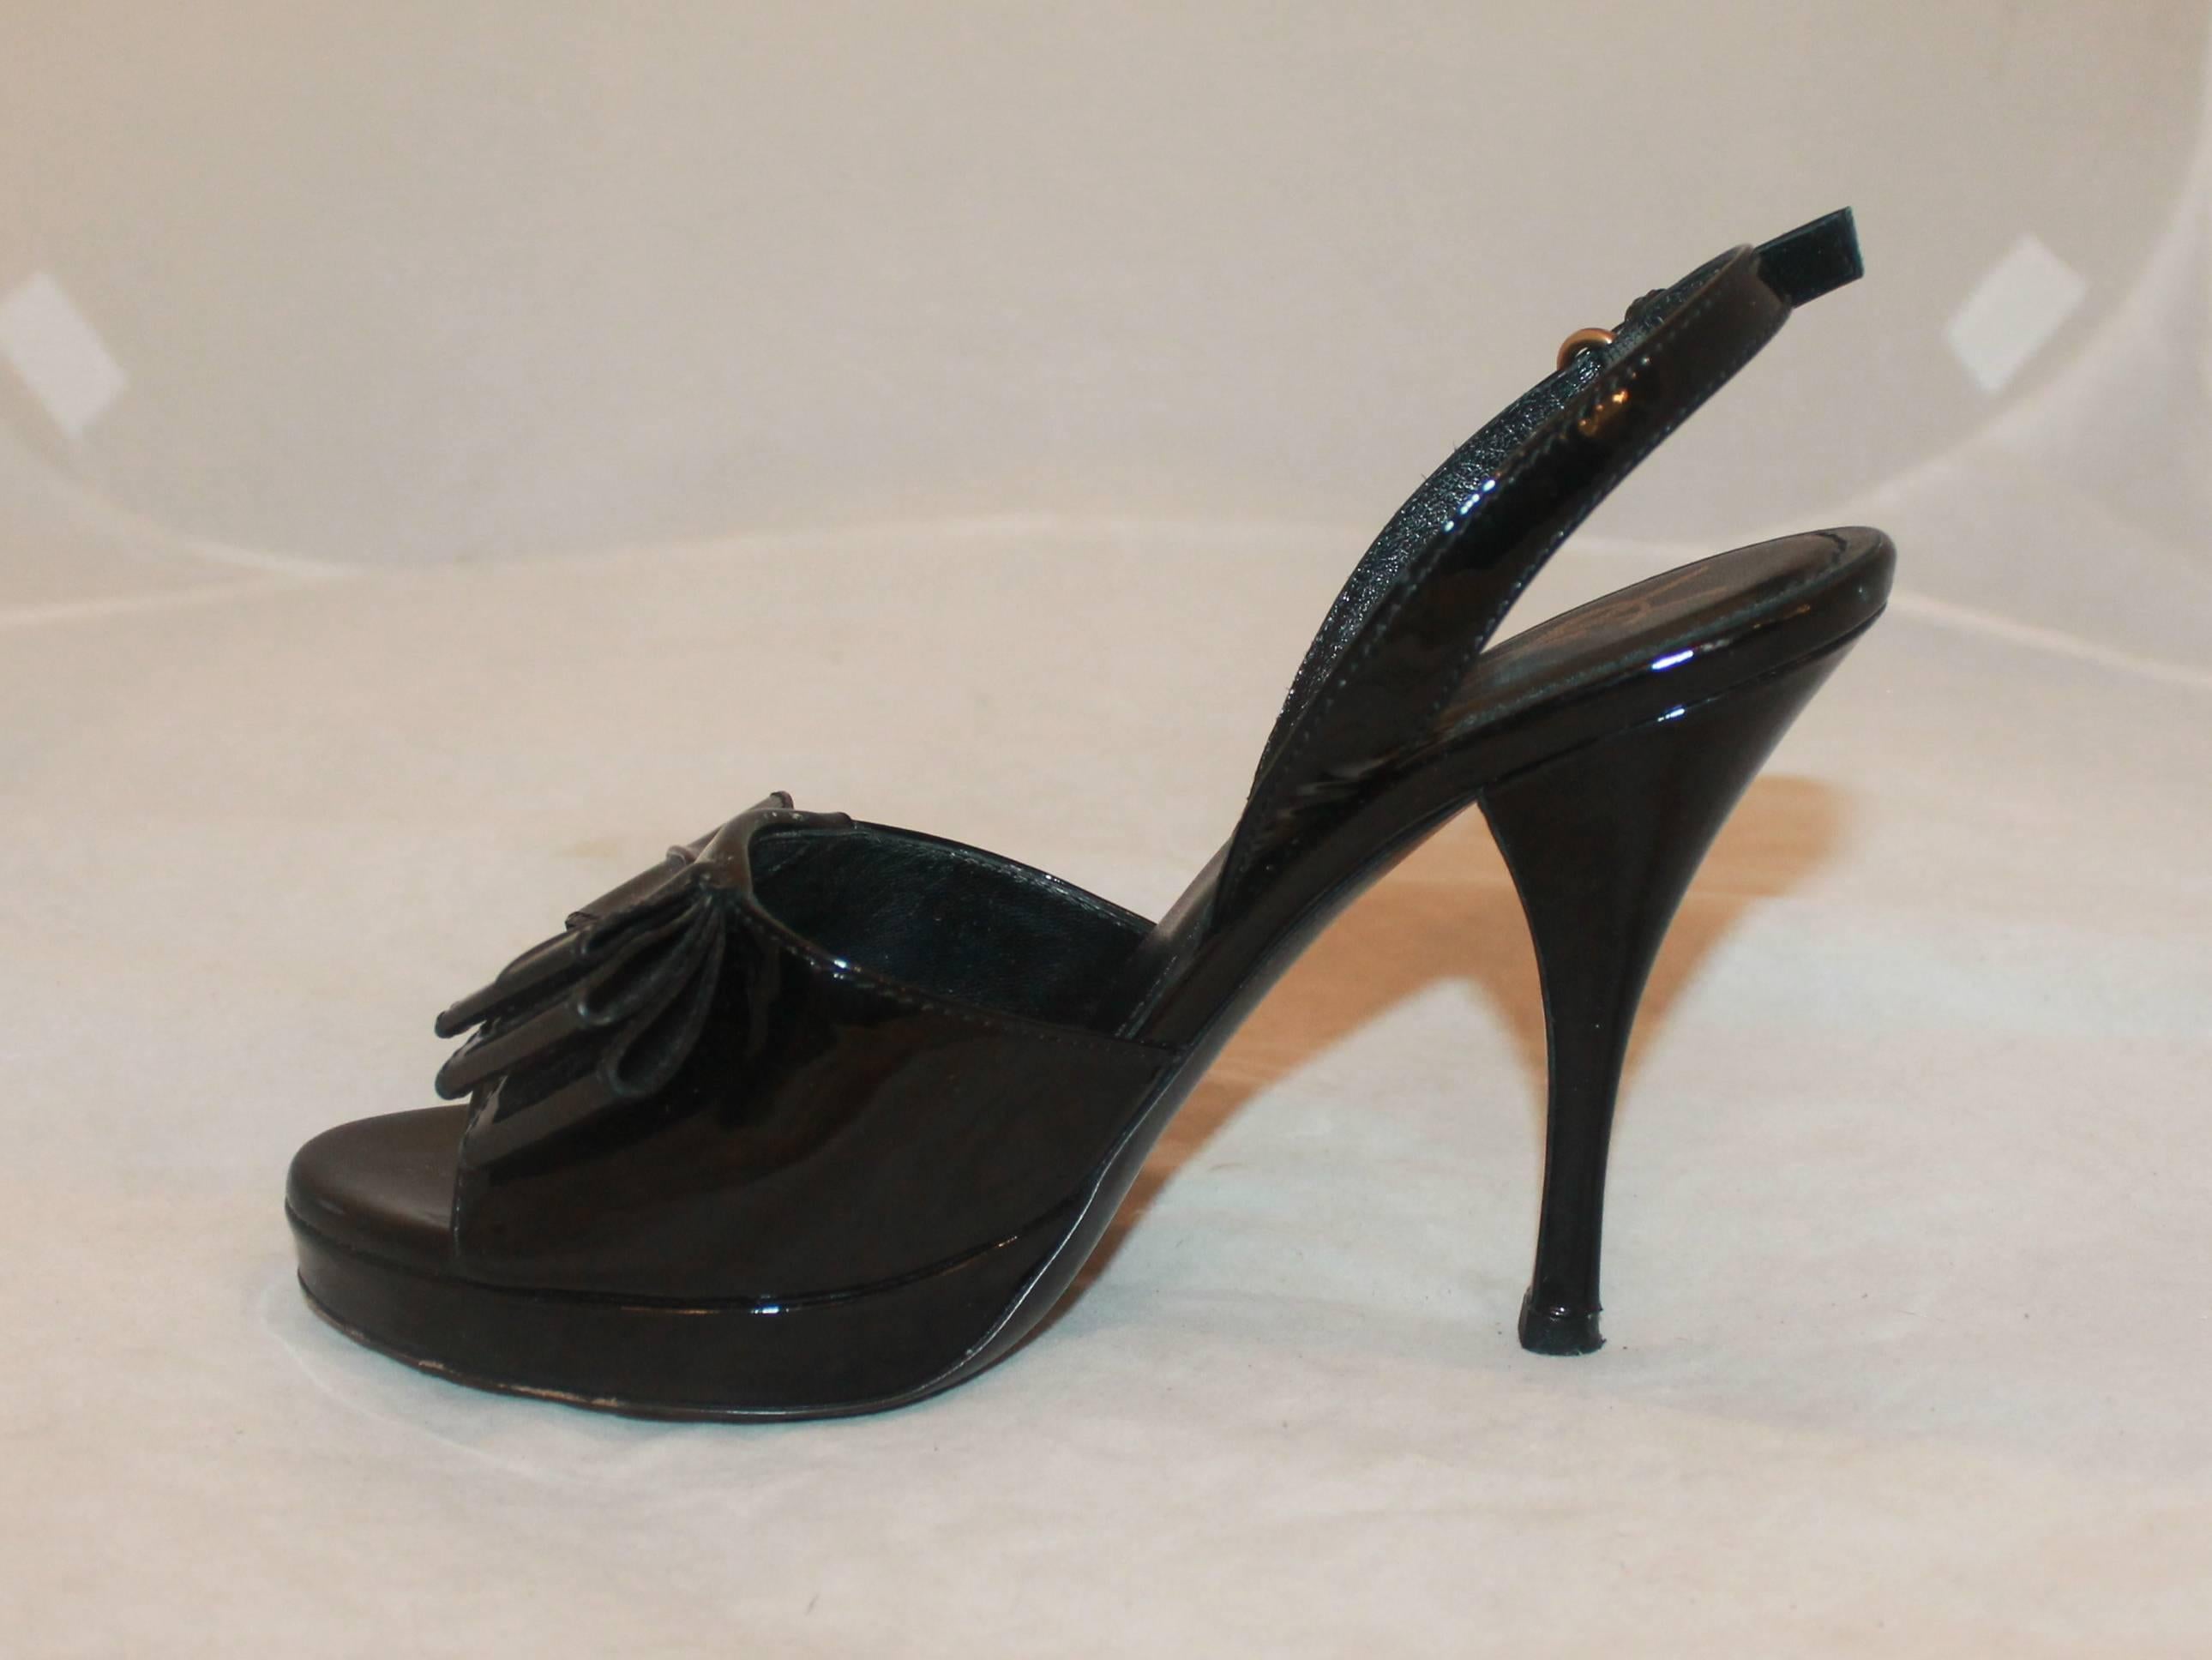 YSL Schwarze Patent Plateau Heels mit Schleife vorne - 36. Diese Schuhe sind in ausgezeichnetem Zustand mit Verschleiß auf dem Boden und allgemeine Abnutzung des Patents. Die Schleife verleiht dem klassischen Schuh einen modernen